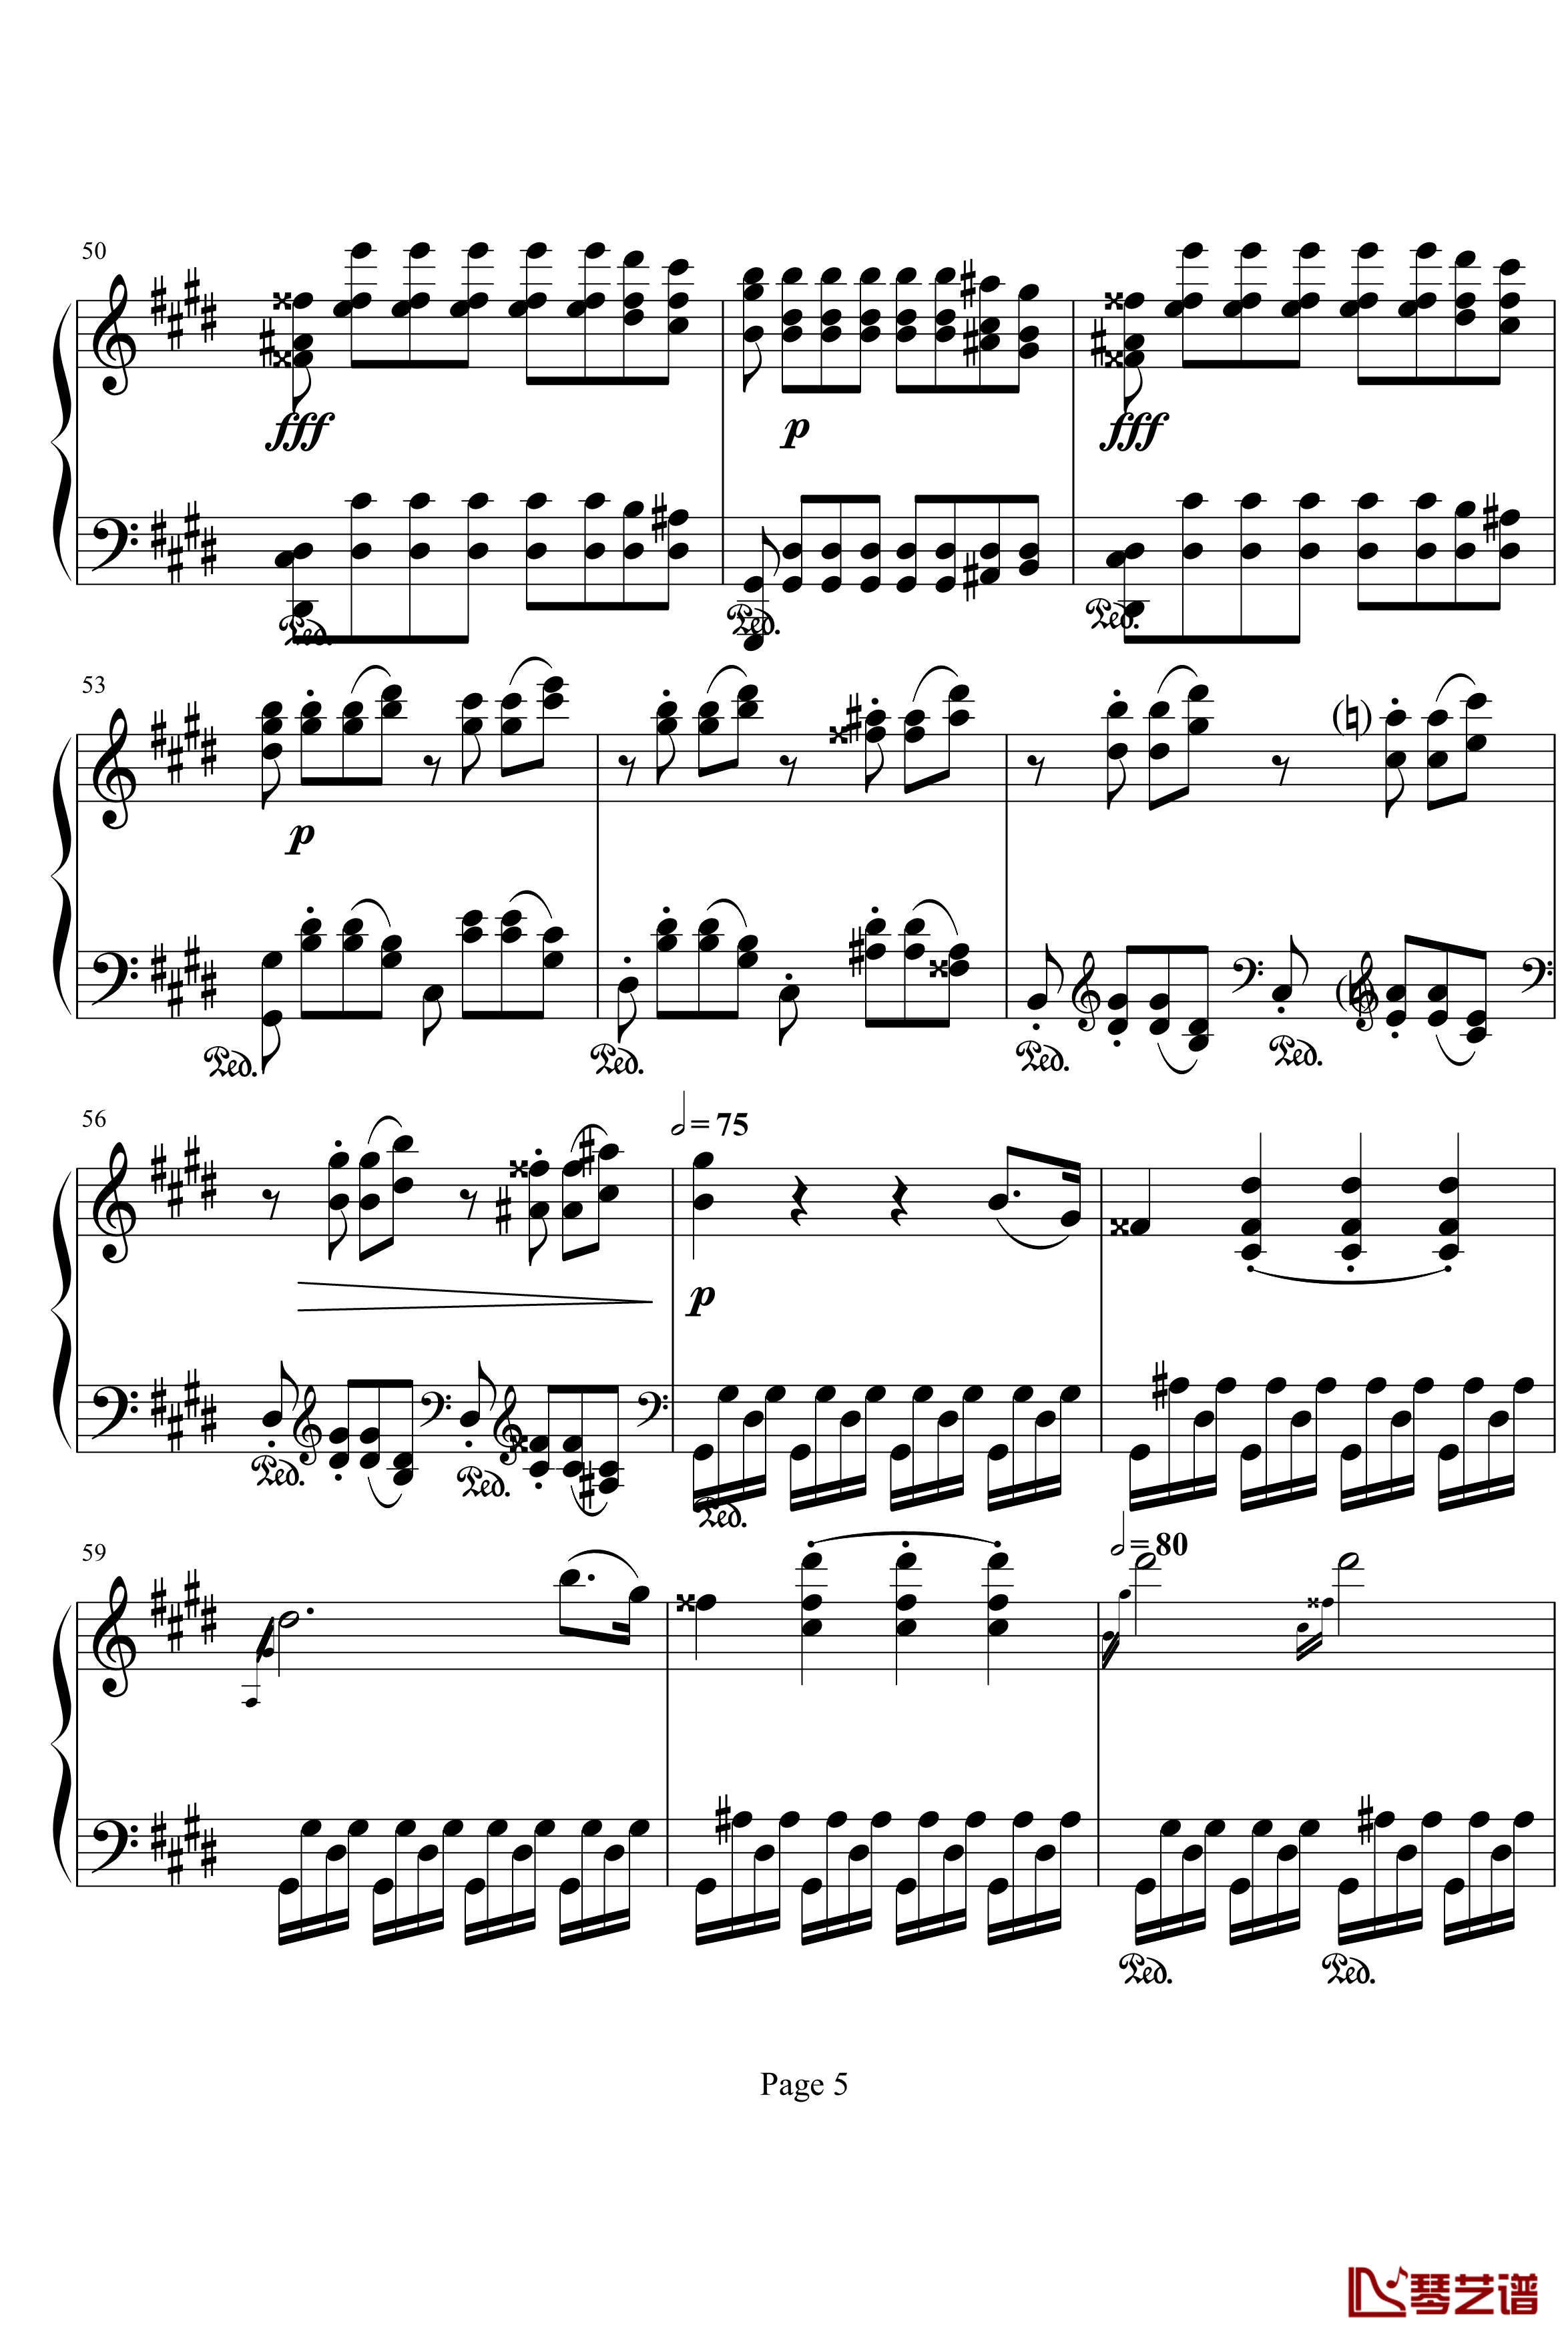 月光奏明曲钢琴谱-作品27之2-贝多芬-beethoven5